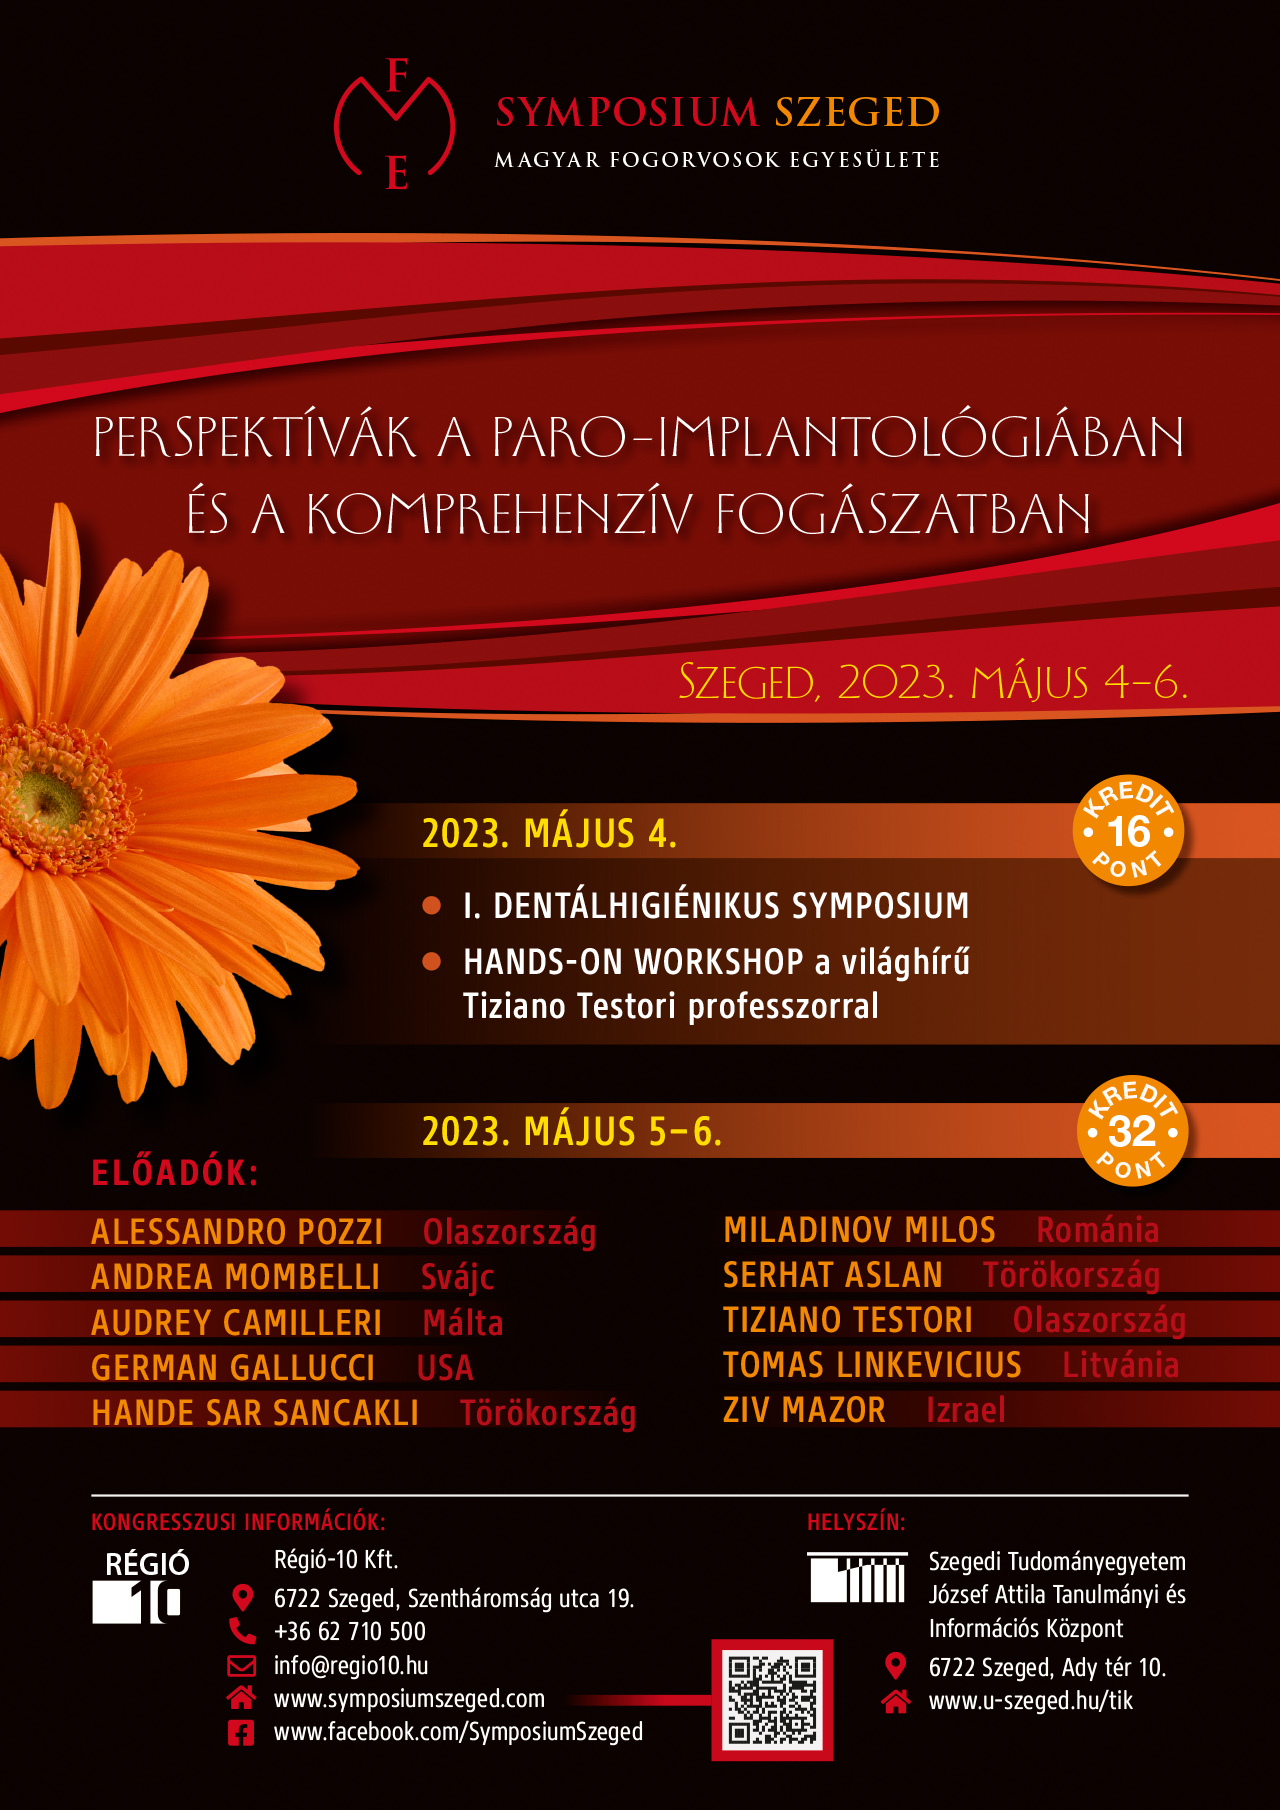 Symposium Szeged